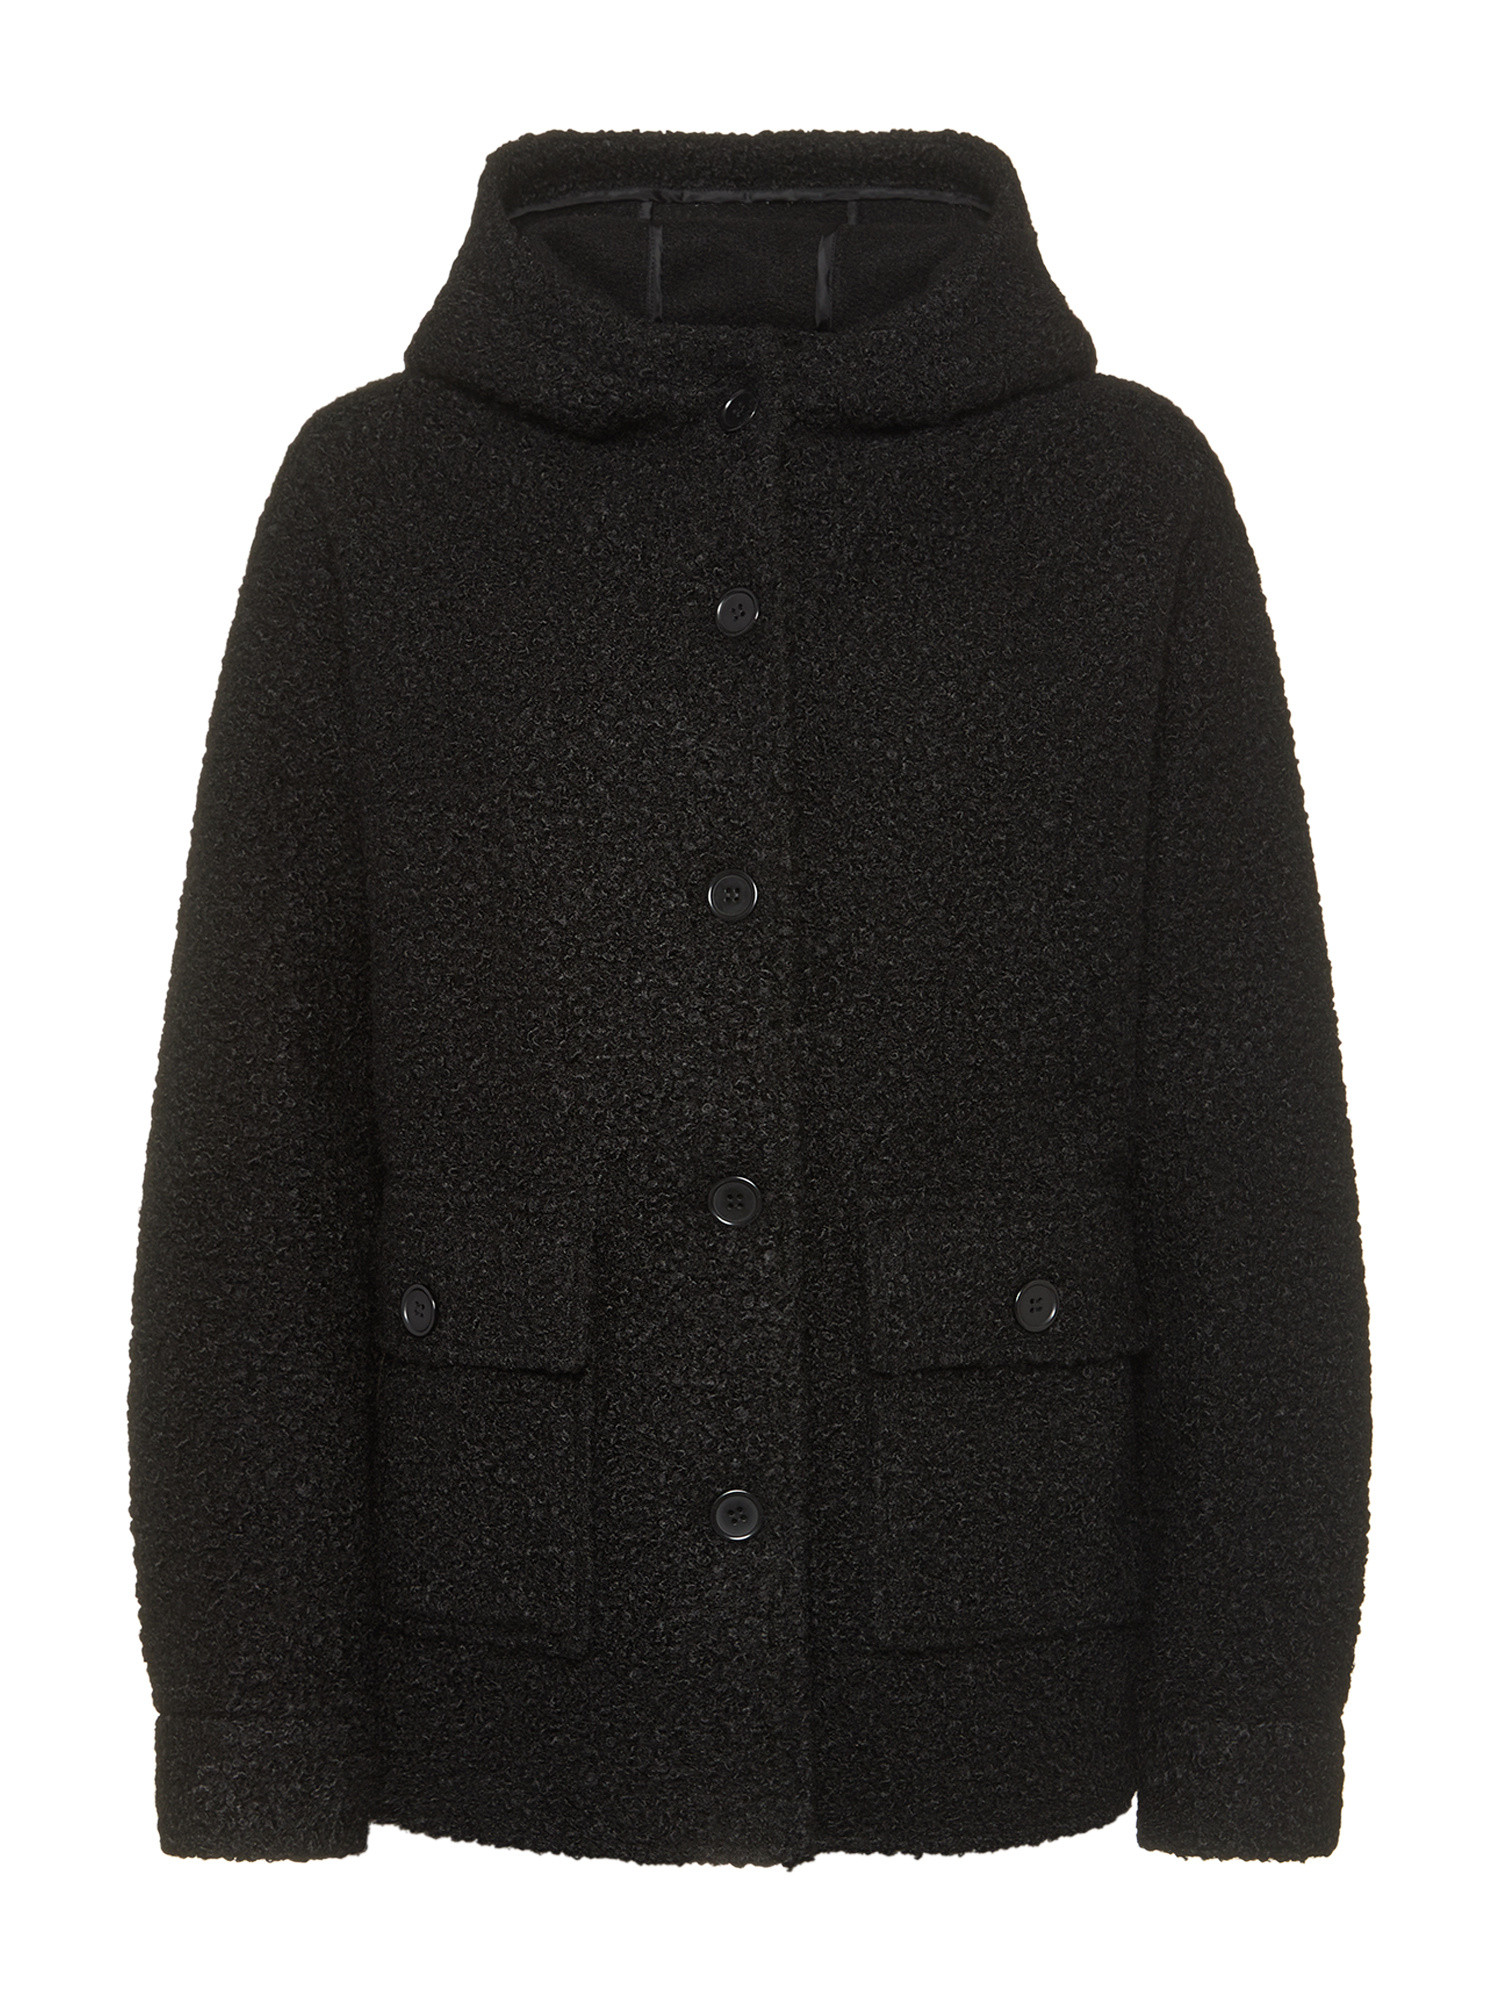 Koan Collection Короткая куртка с капюшоном., черный куртка короткая с капюшоном power s черный